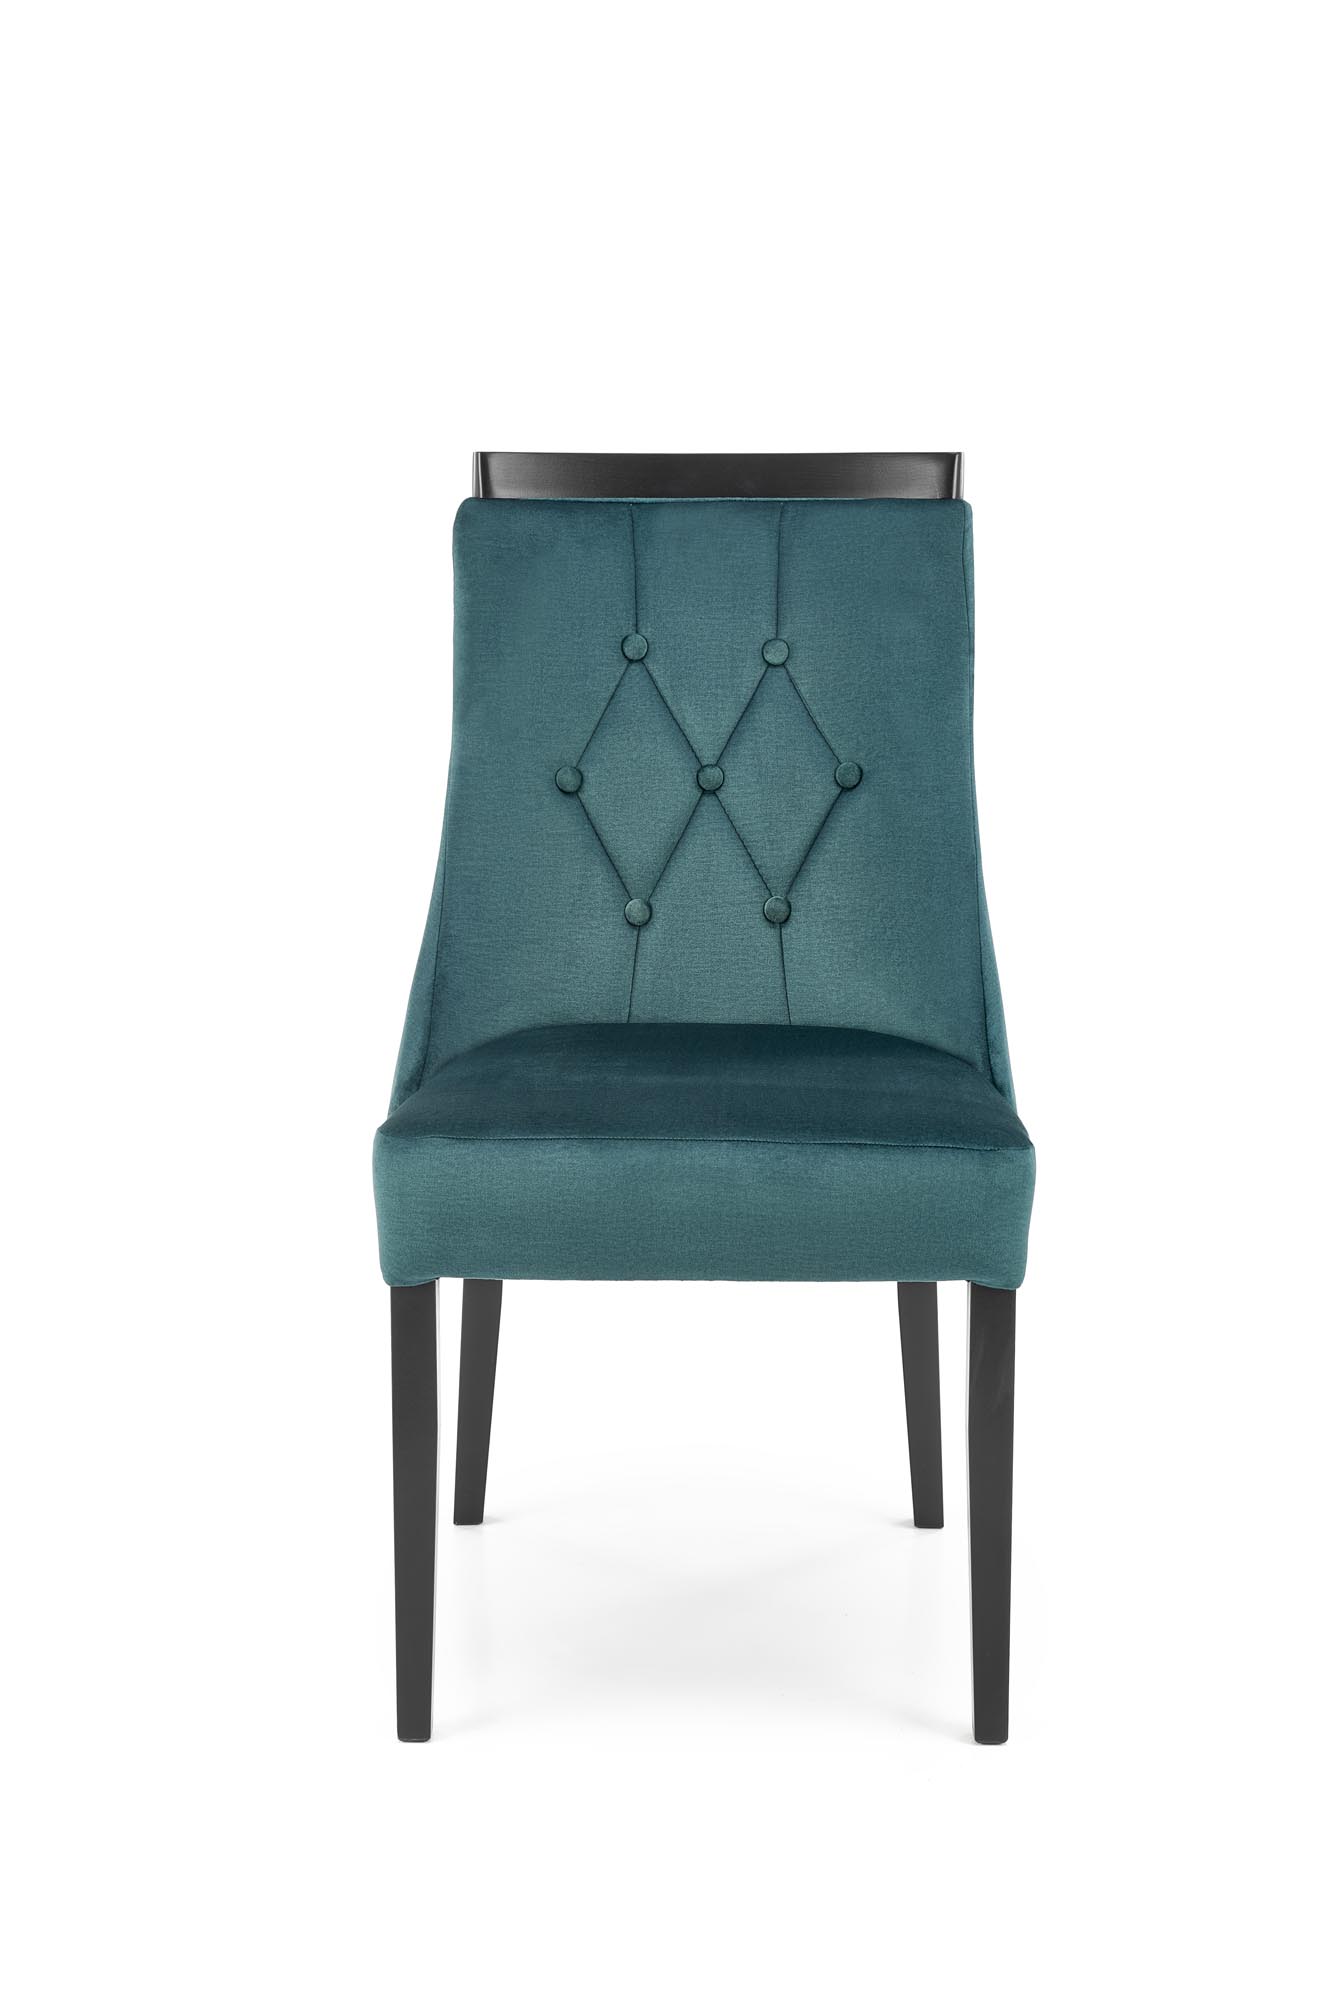 Krzesło tapicerowane Royal - czarny / ciemna zieleń krzesło tapicerowane royal - czarny / ciemna zieleń